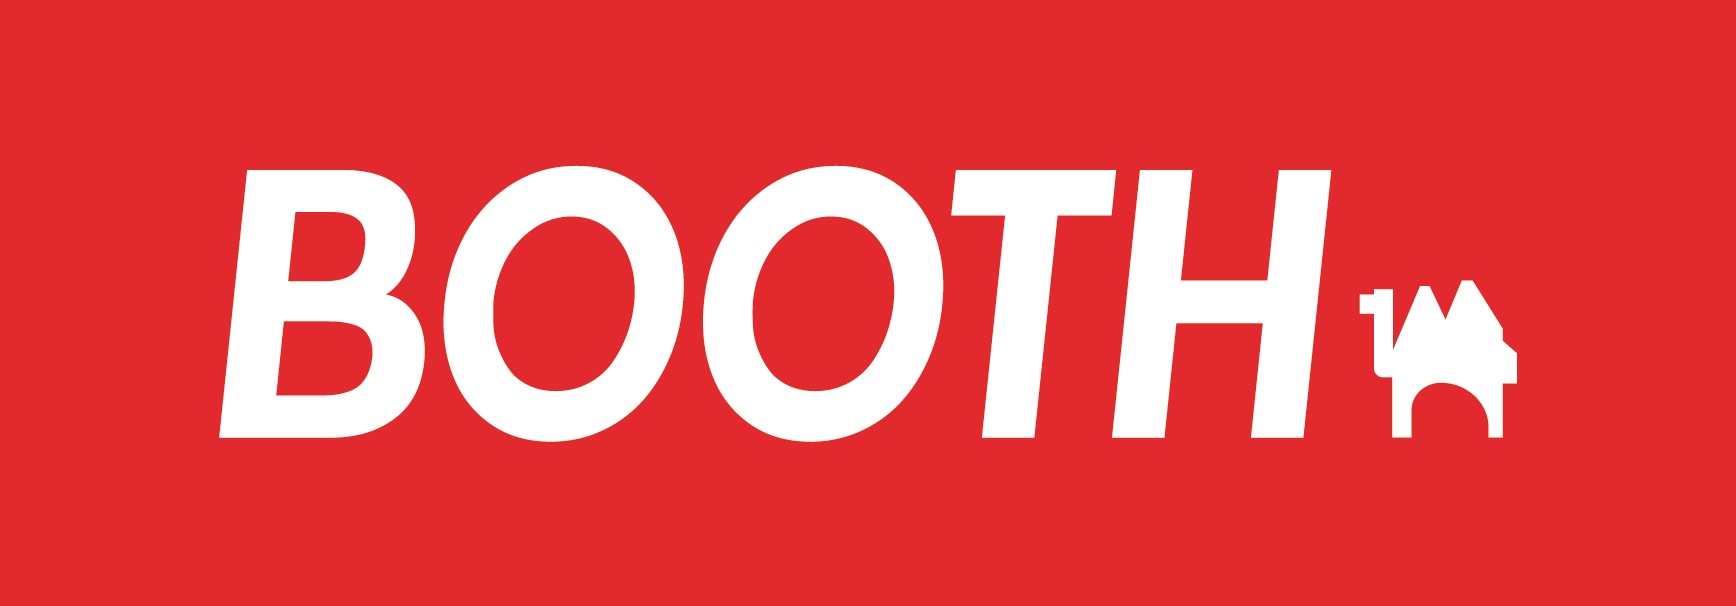 boothLogo